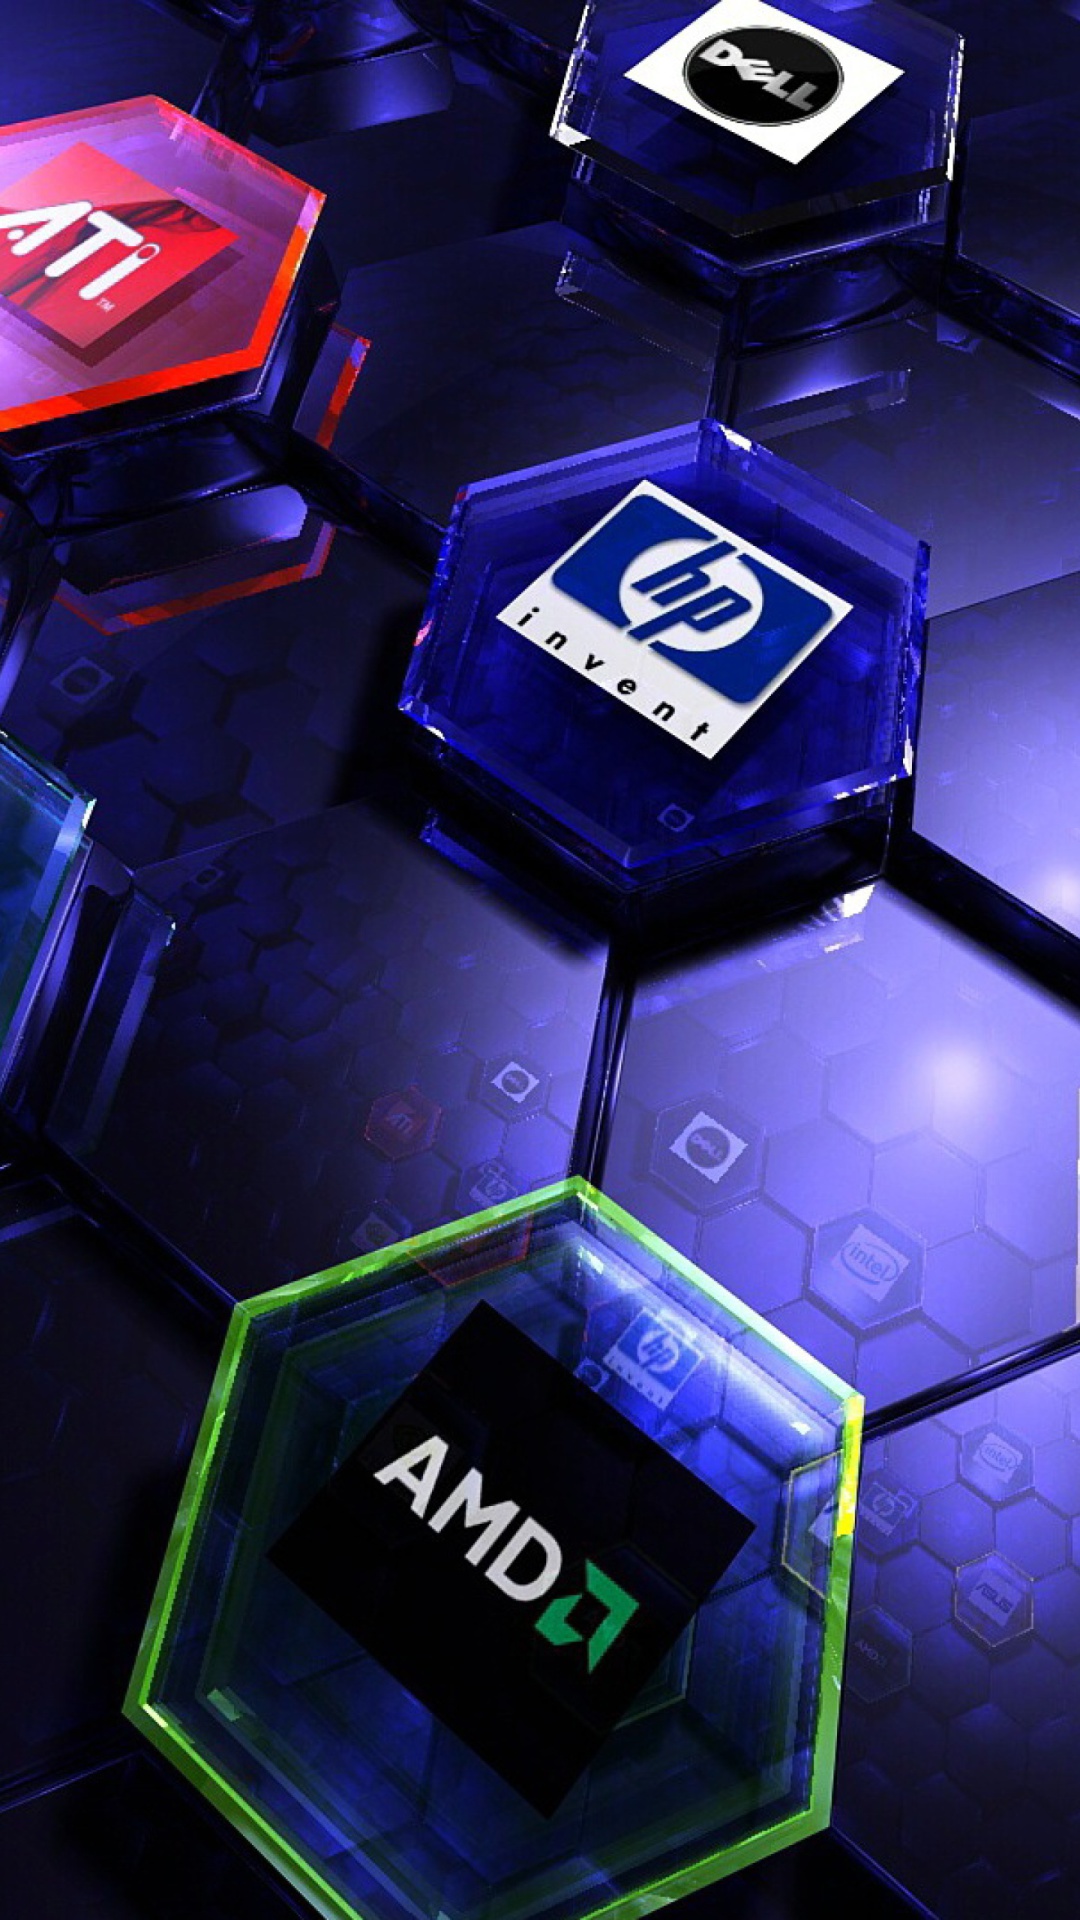 Das Hi-Tech Logos: AMD, HP, Ati, Nvidia, Asus Wallpaper 1080x1920